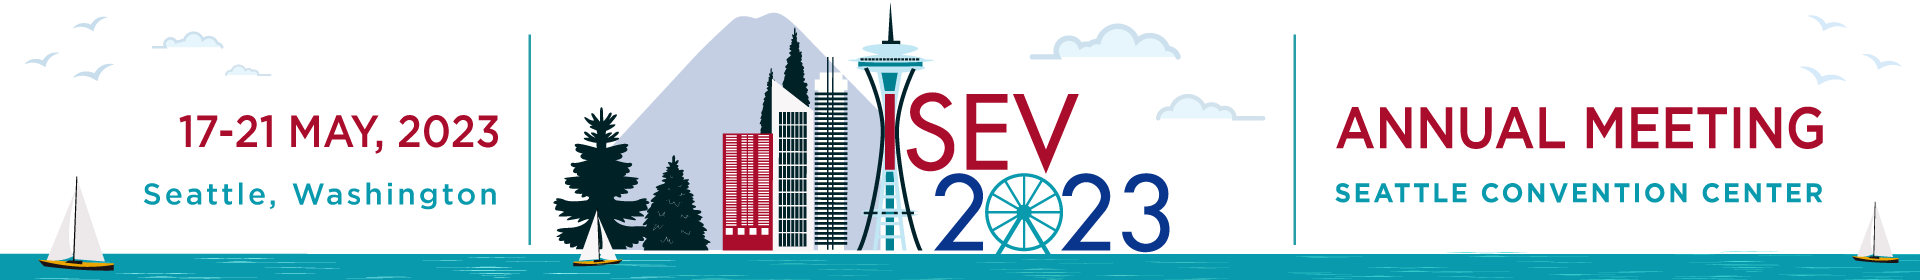 ISEV2023 Event Banner